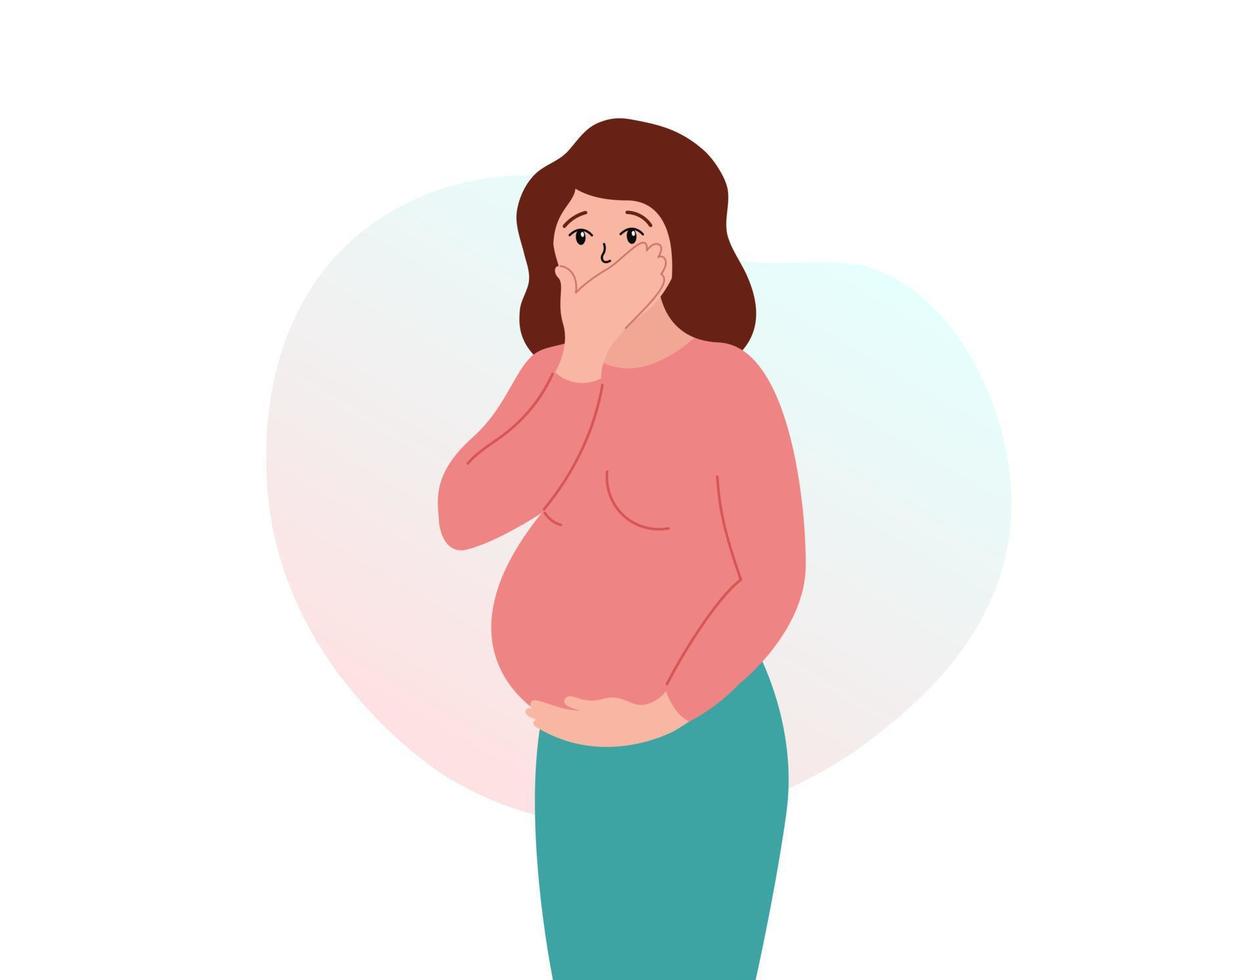 toxicosis del embarazo. náuseas matutinas mujer embarazada que sufre de náuseas y vómitos. ilustración vectorial plana vector